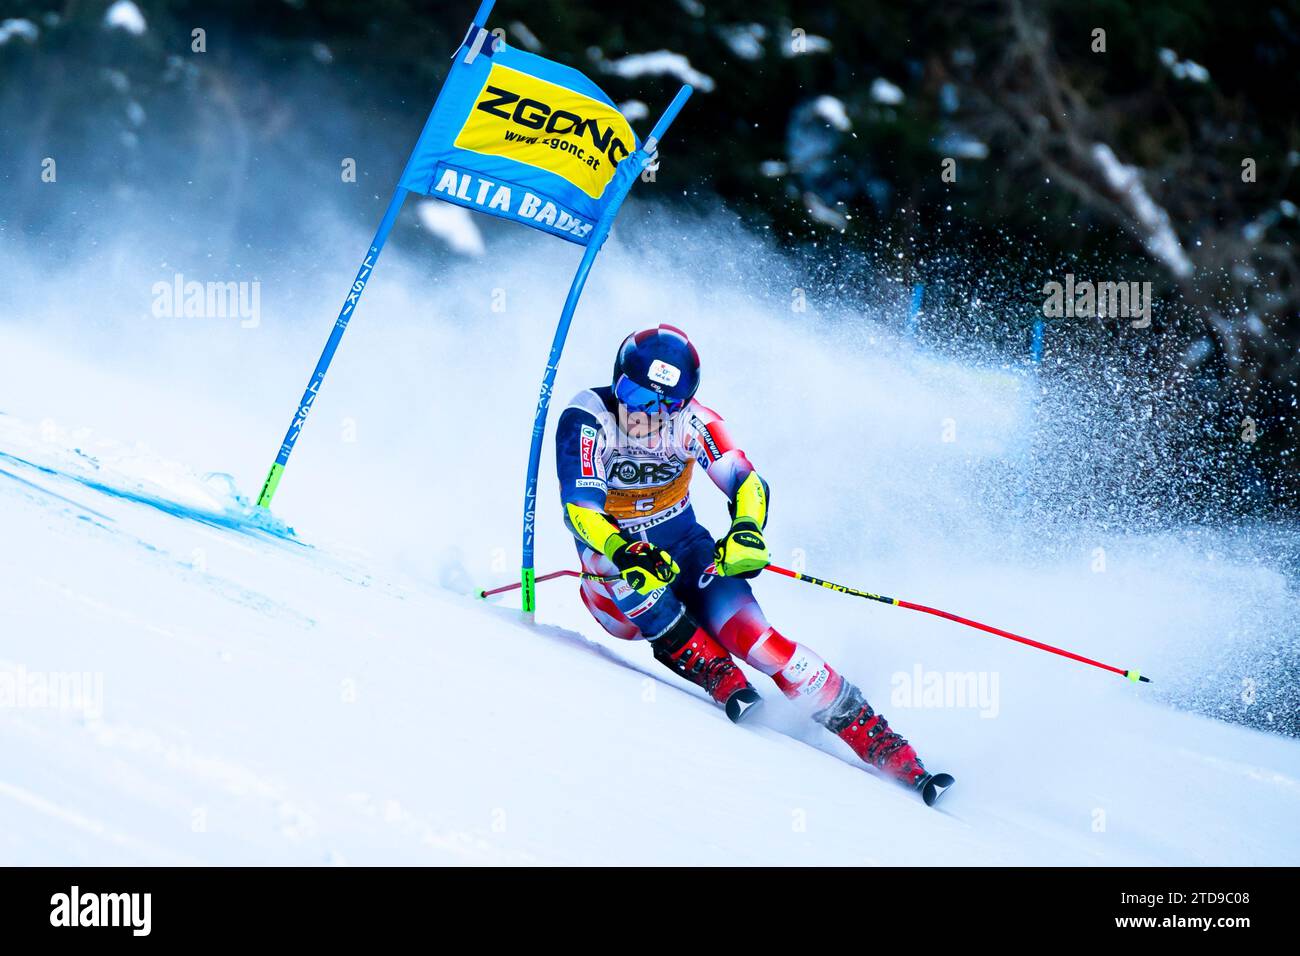 Alta Badia, Italia 17 dicembre 2023. ZUBCIC Filip (Cro) gareggia nello Slalom gigante maschile della Coppa del mondo di Sci Alpino Audi Fis sul tracciato Gran Risa nella catena dolomitica. Crediti: MAURO DALLA POZZA/Alamy Live News Foto Stock